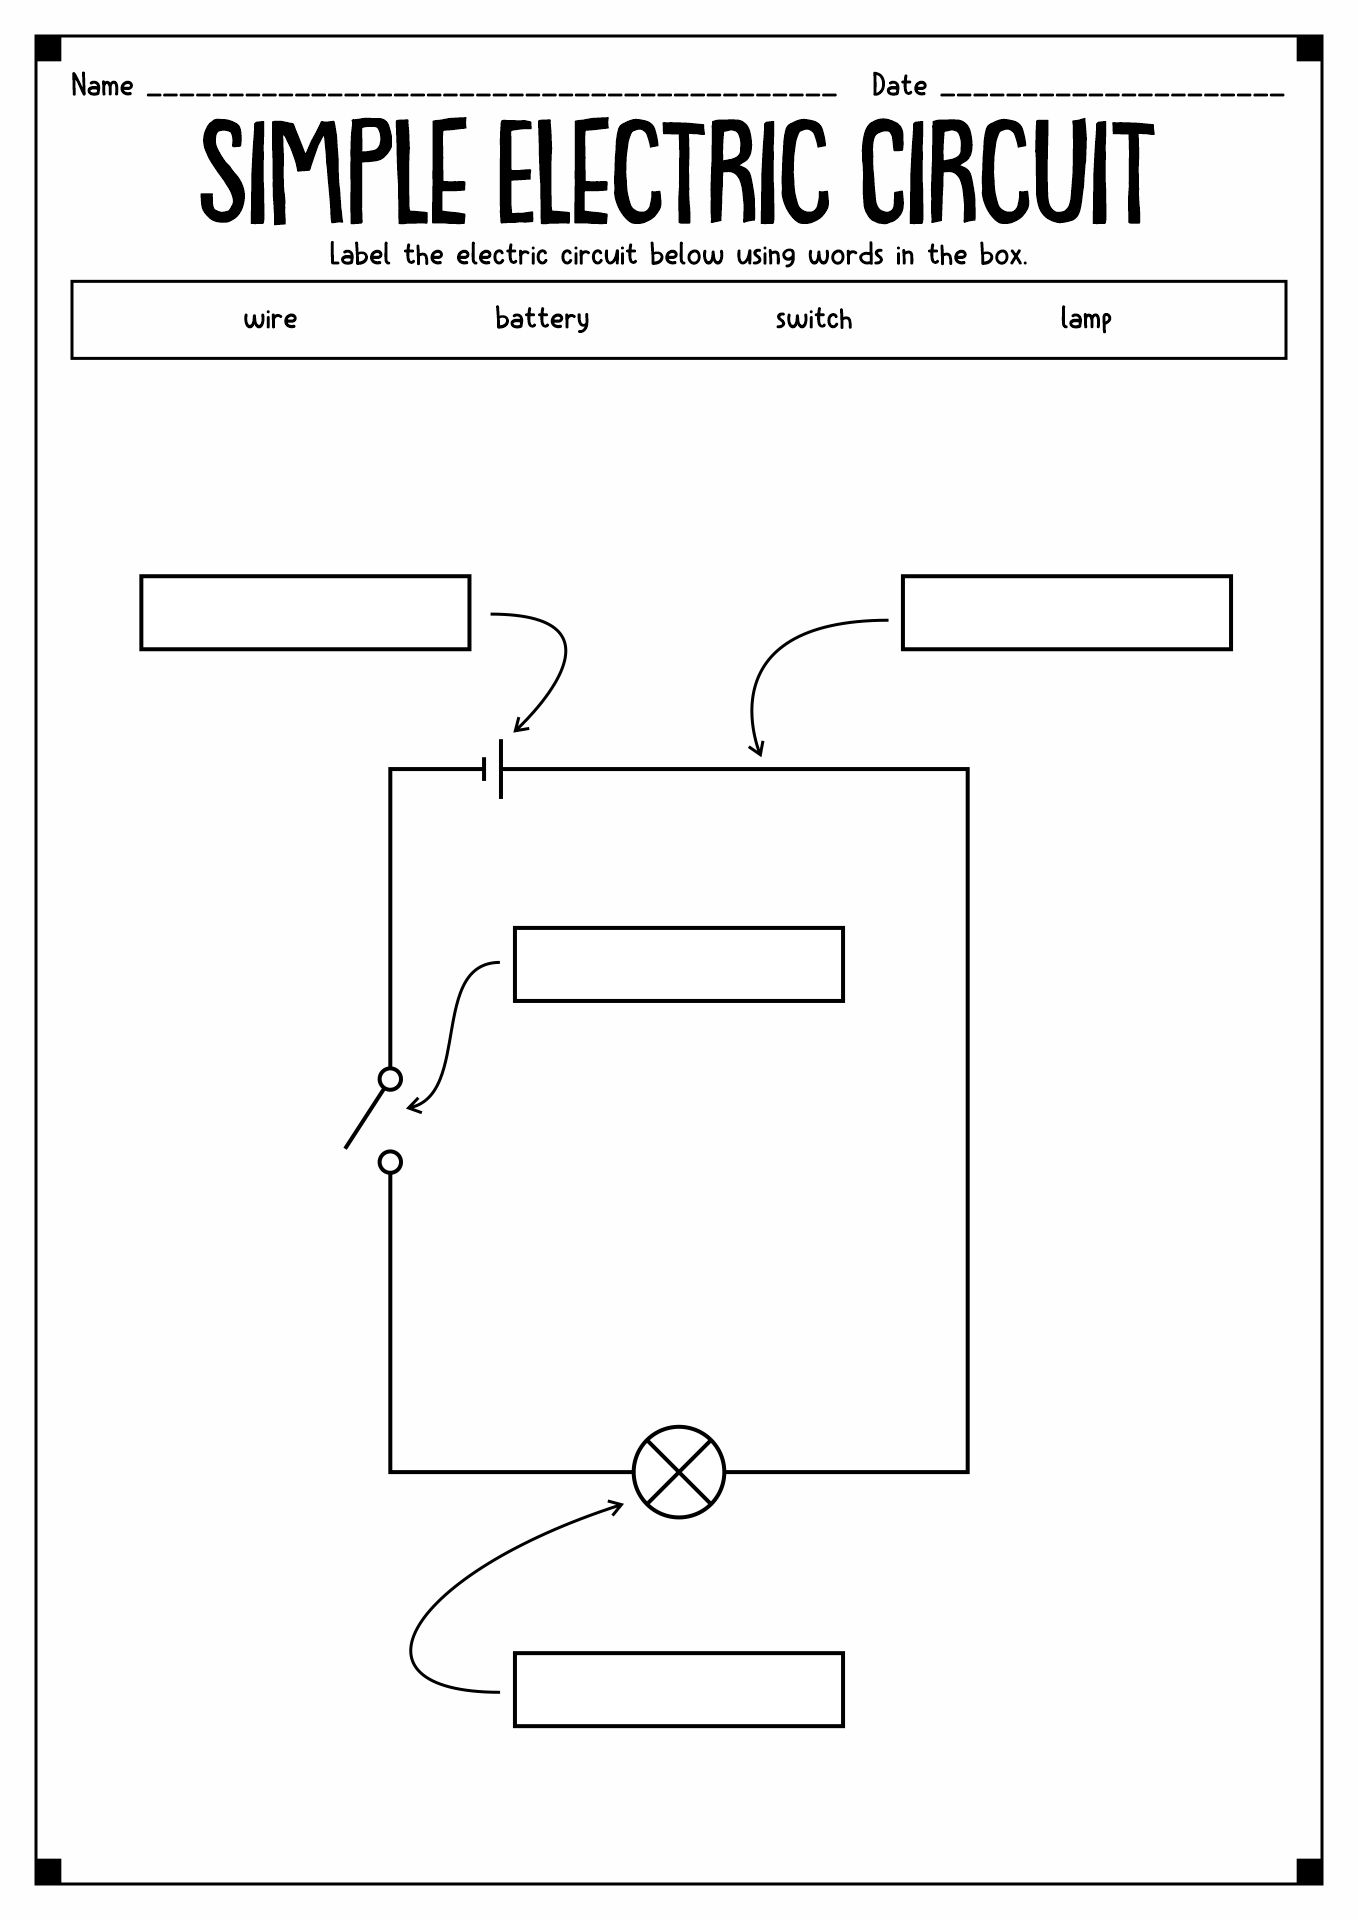 Simple Circuit Worksheet Image